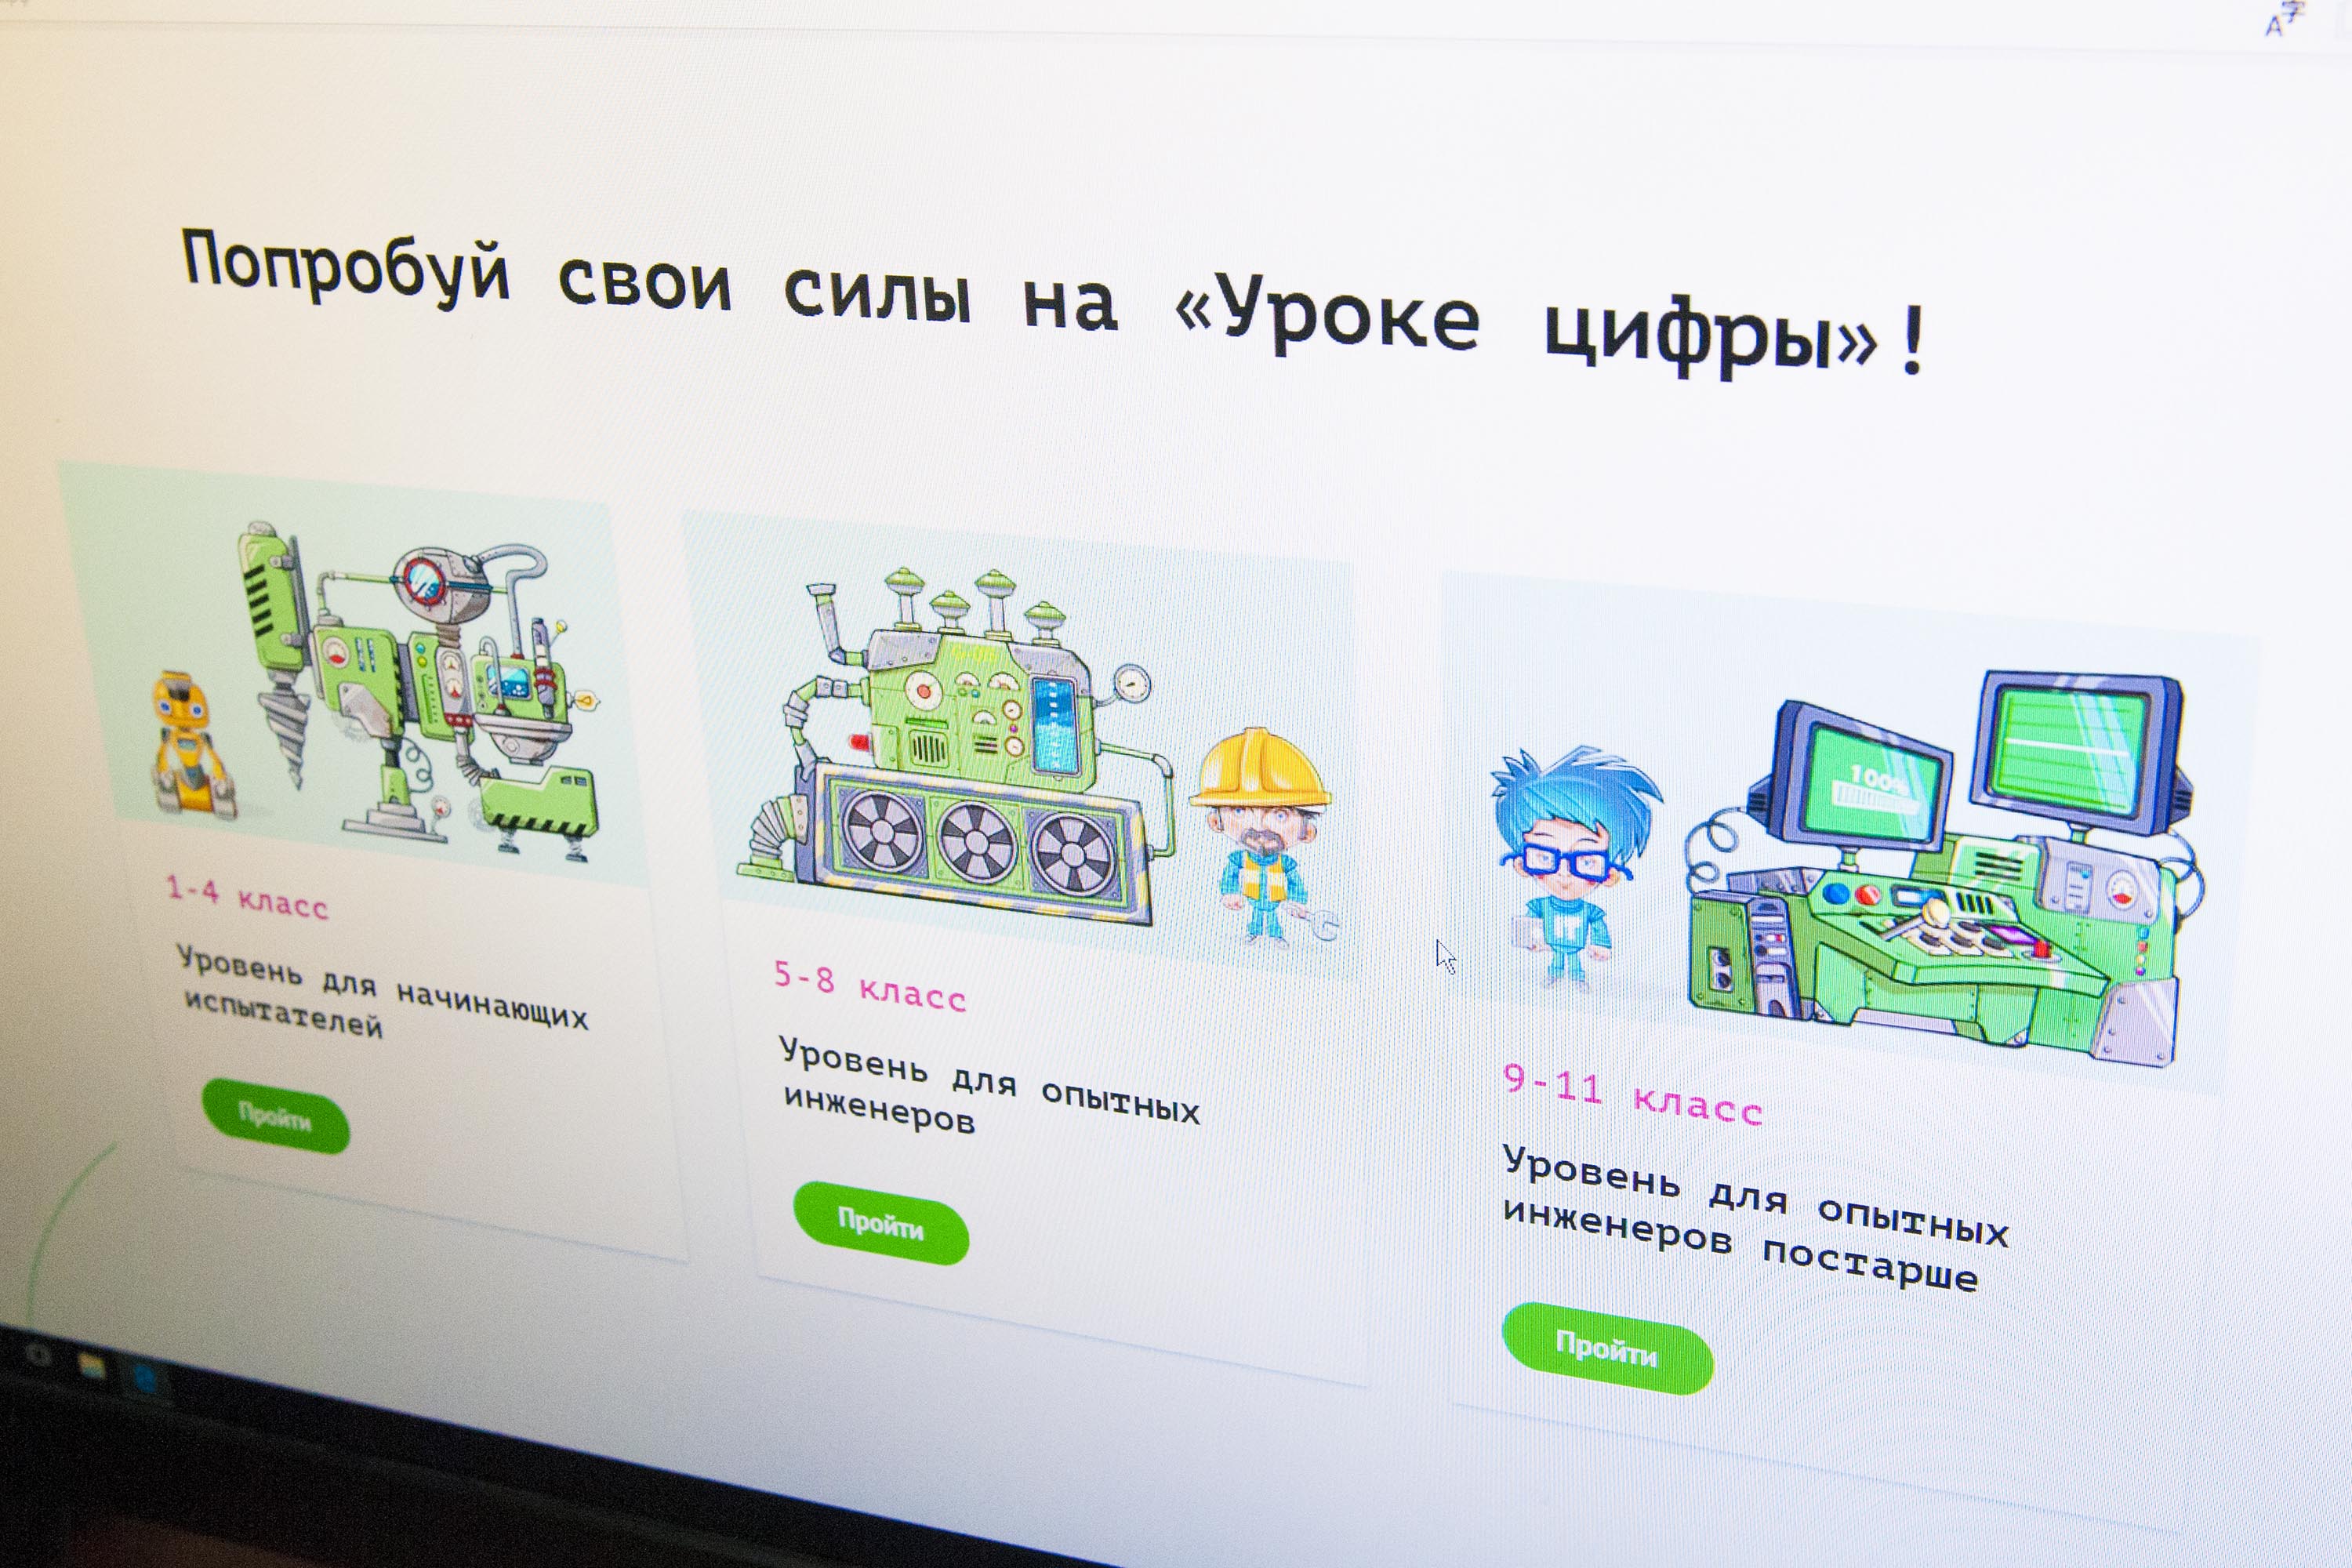 Кузбасские школьники стали участниками Всероссийского «Урока цифры» по теме «Управление проектами»